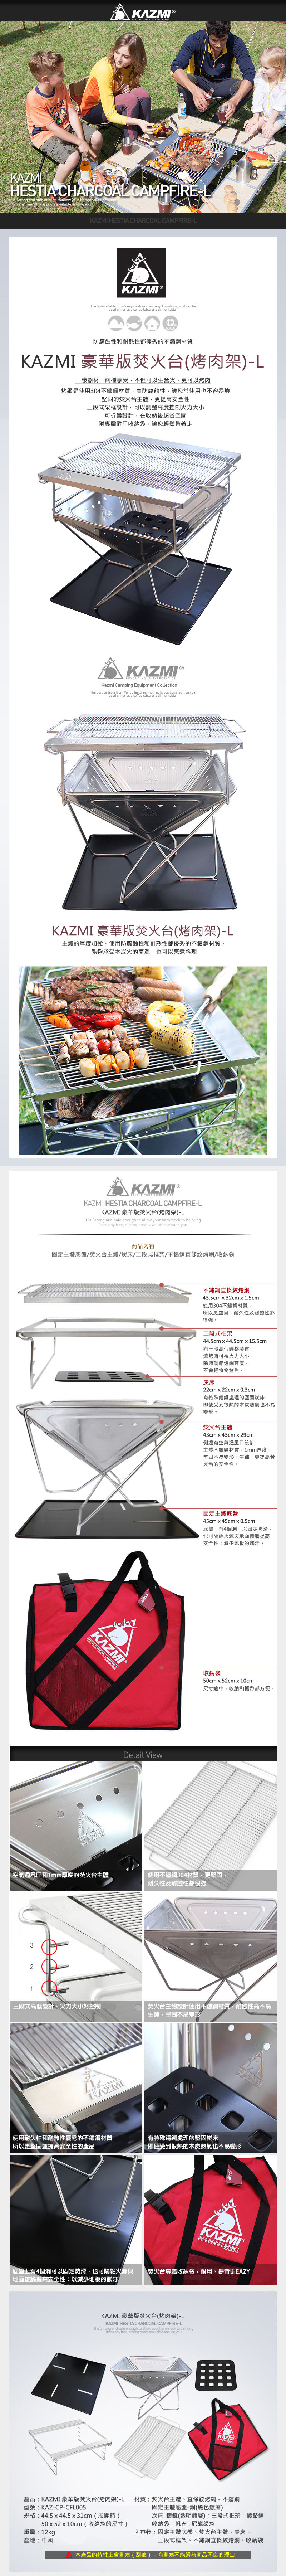 【山野賣客】KAZMI 豪華版焚火台(烤肉架) L K3T3G002